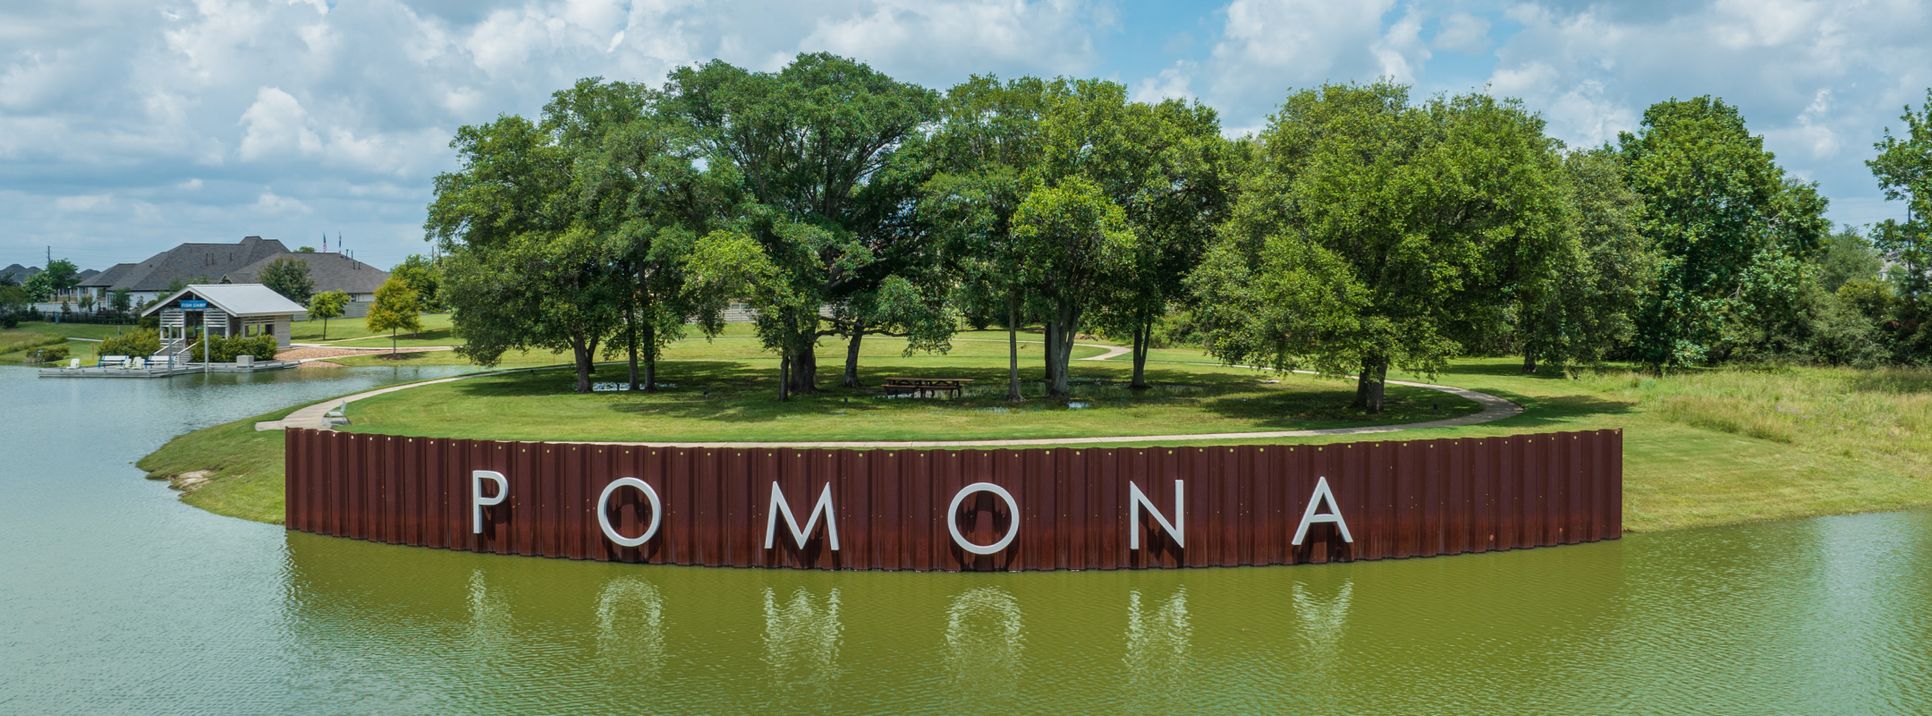 Pomona sign